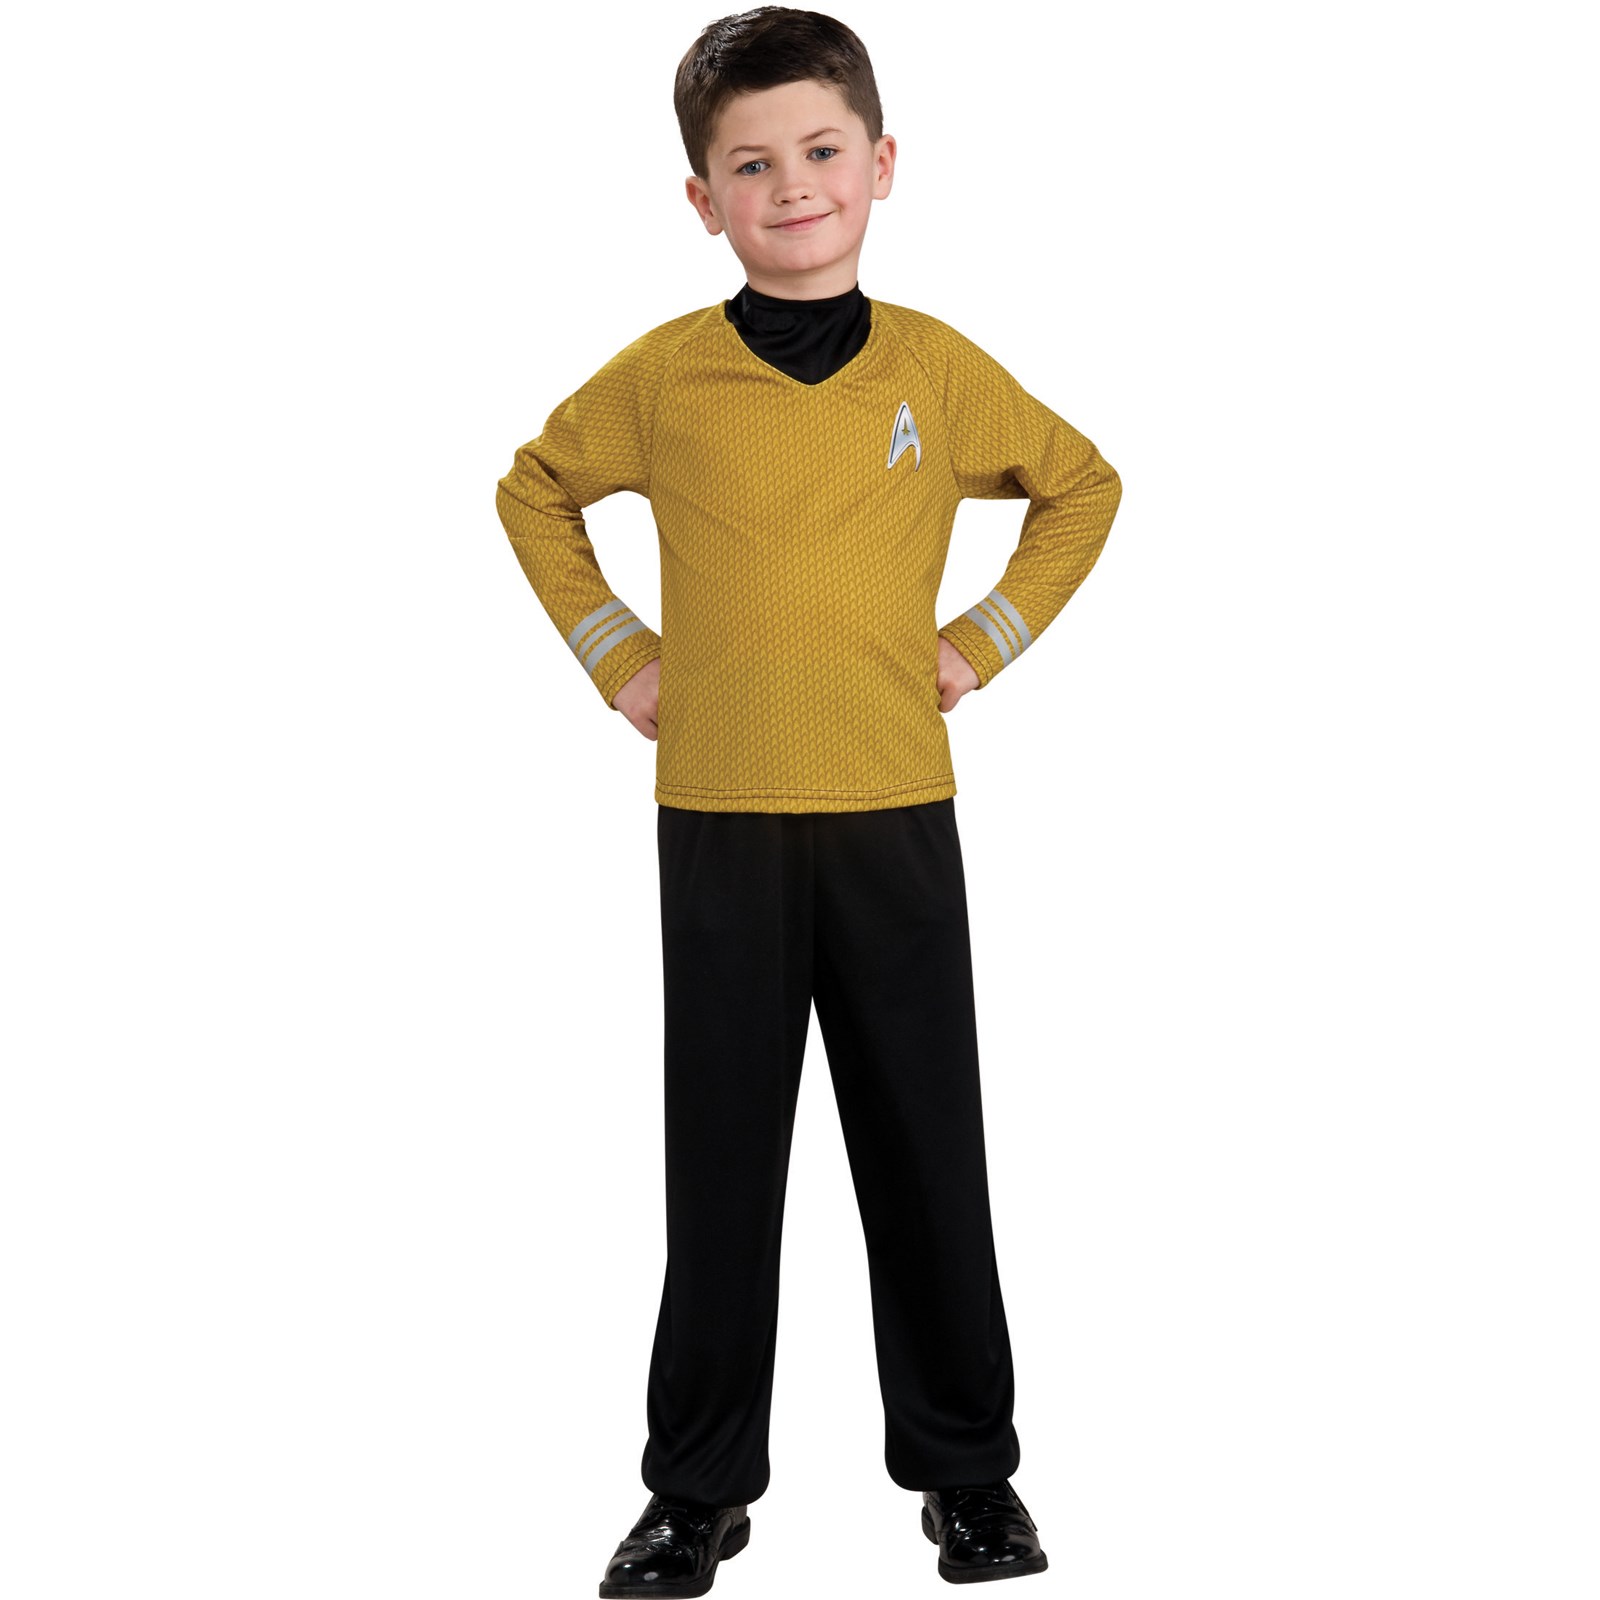 Star Trek Movie Gold Shirt Child Costume